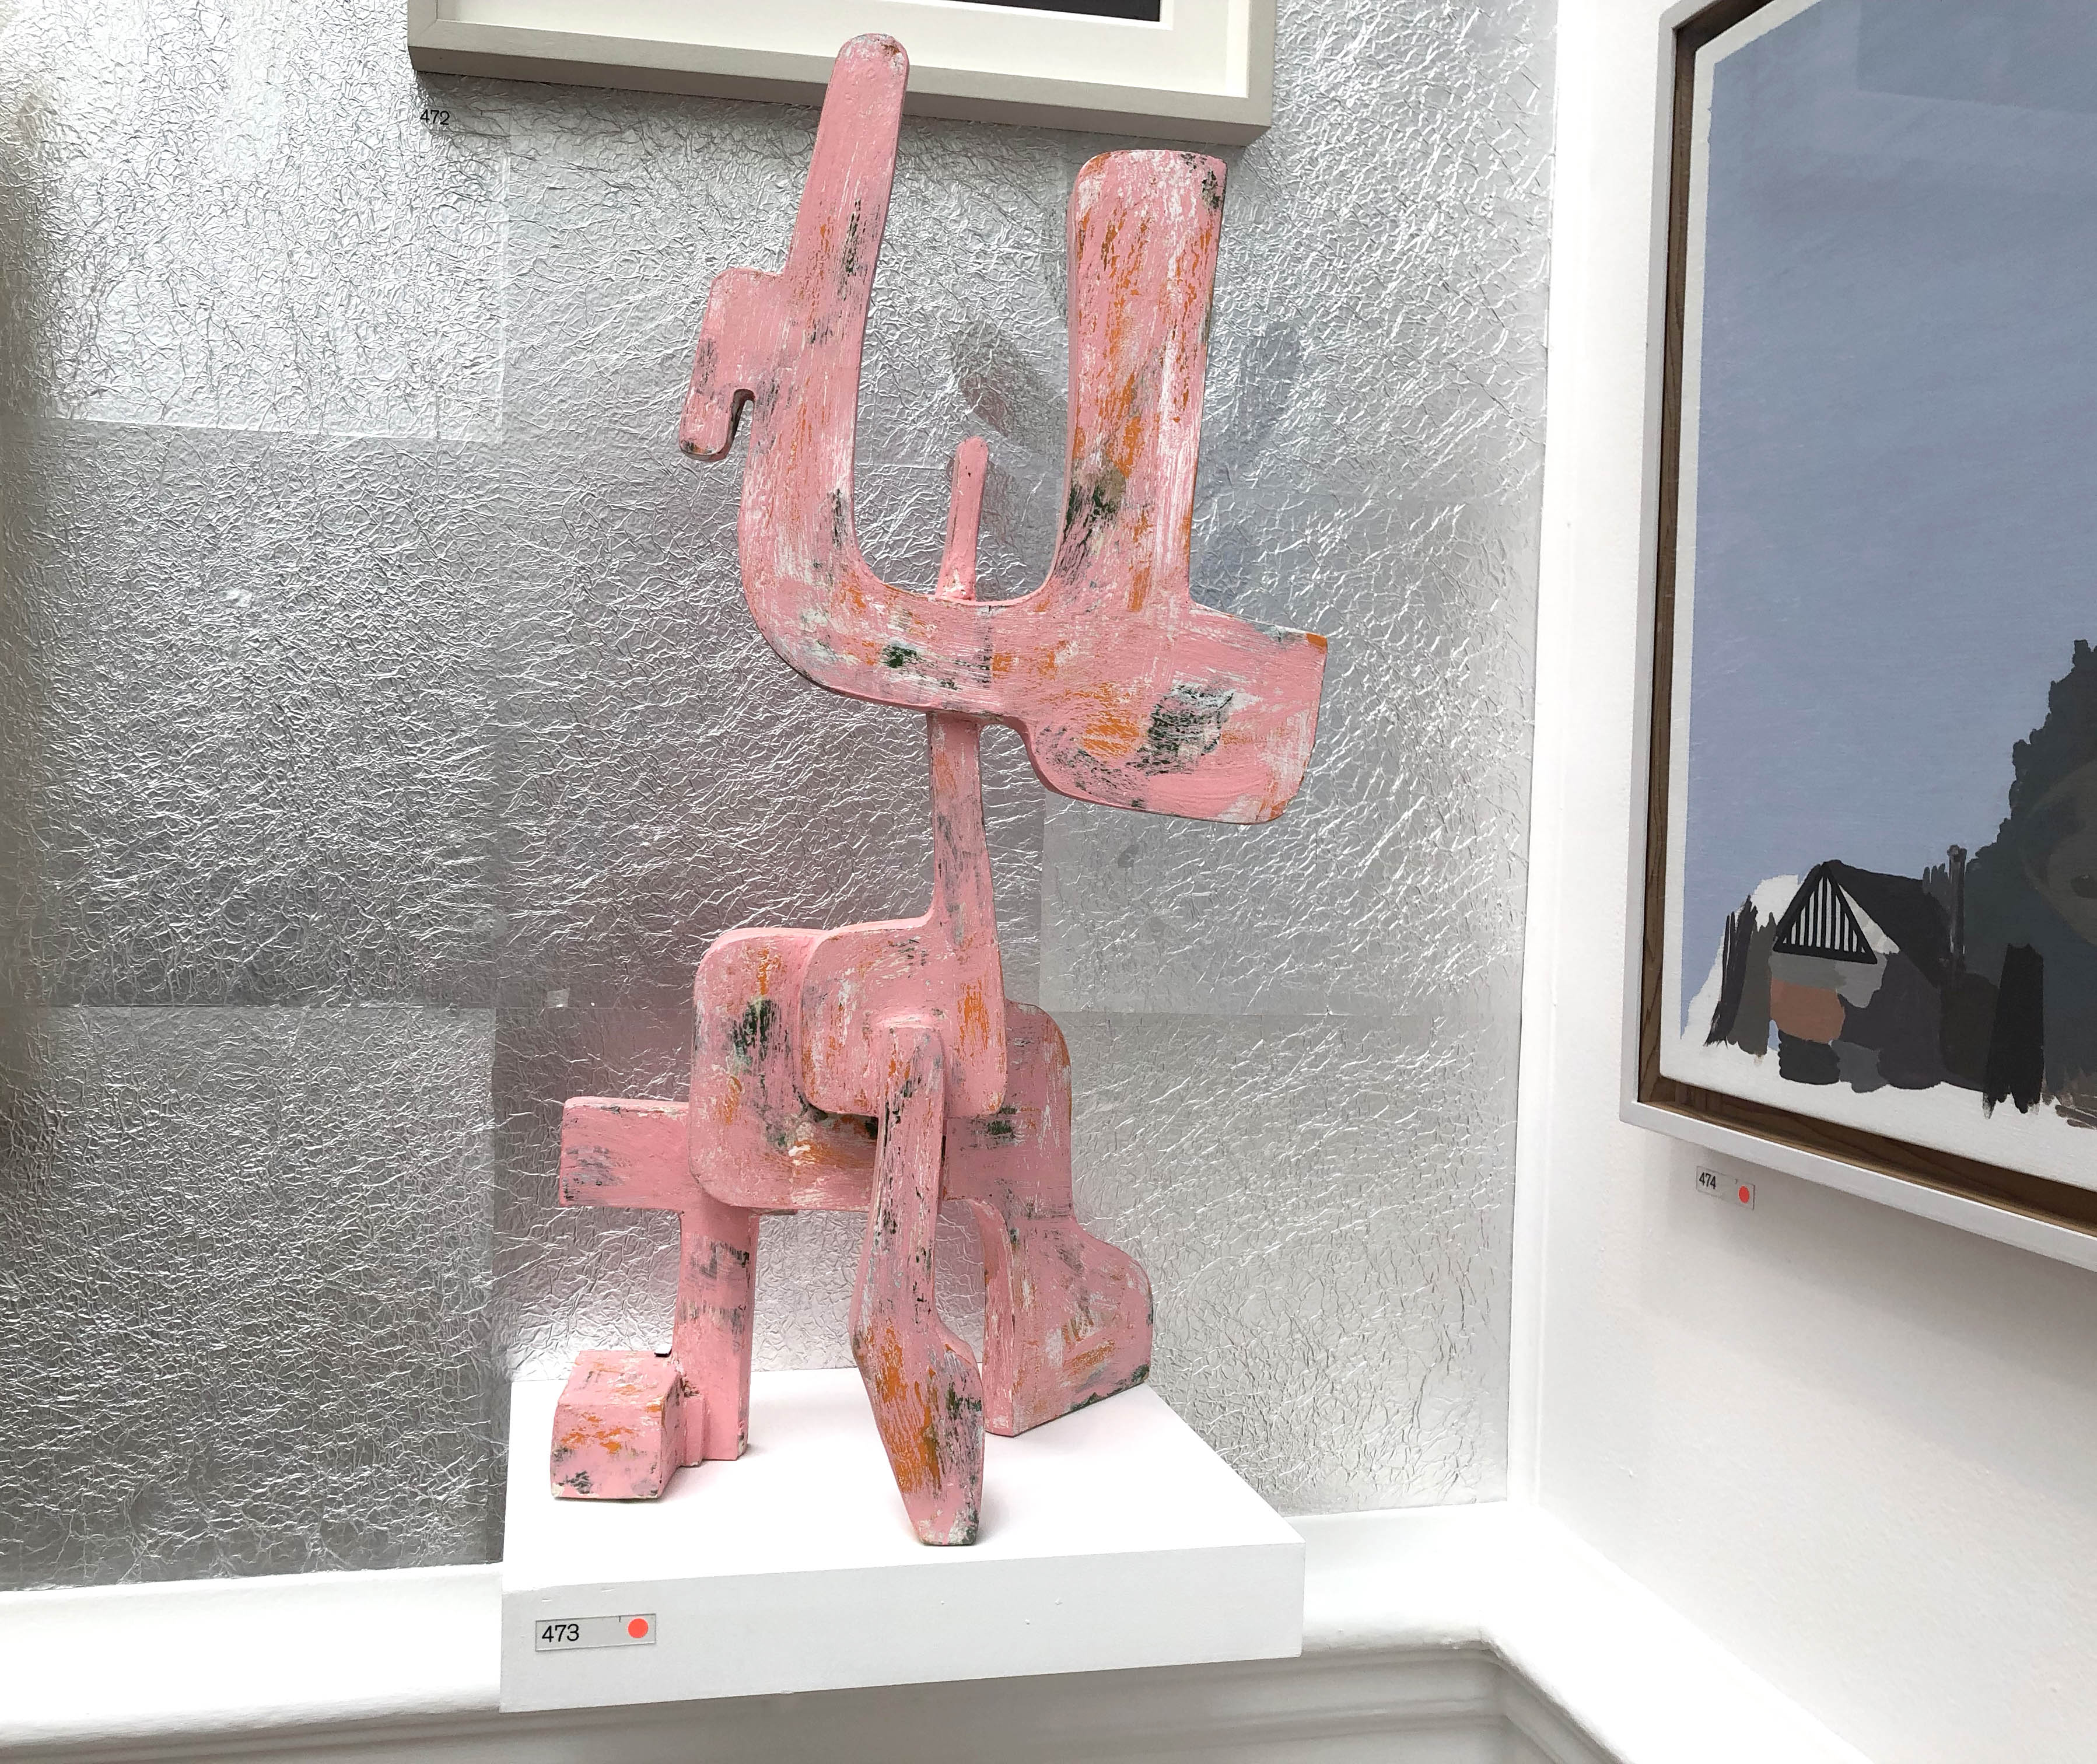 Mark Croxford Dog Sculpture Summer Exhibition 2018